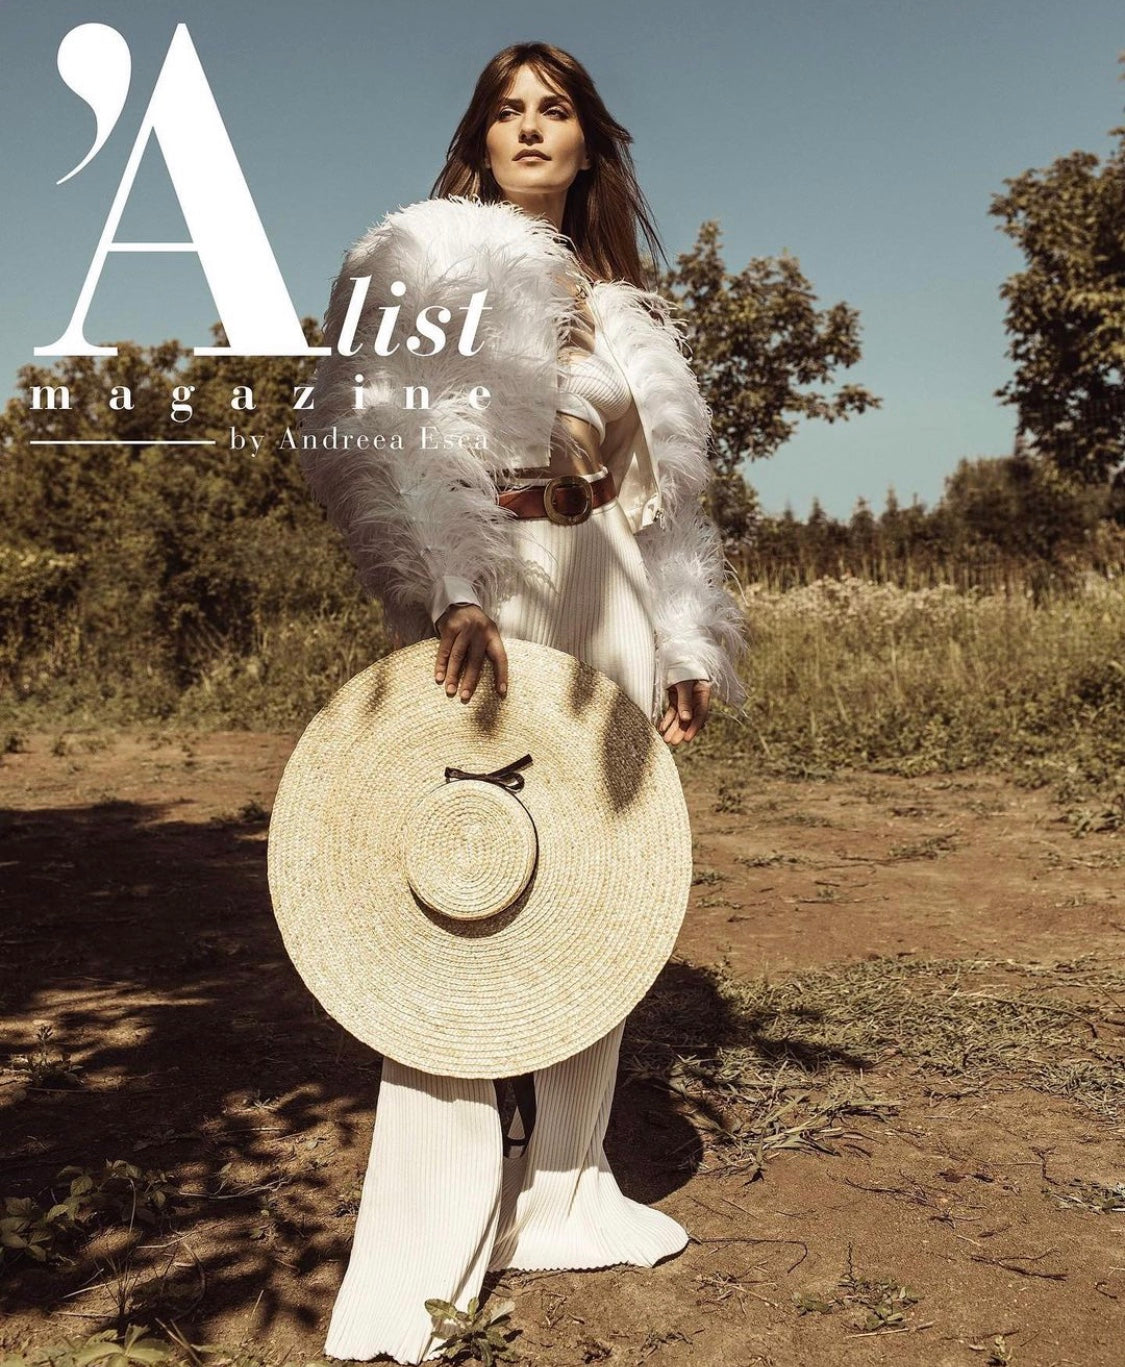 Aida Economy wearing OMRA feathers jacket for Alist Magazine